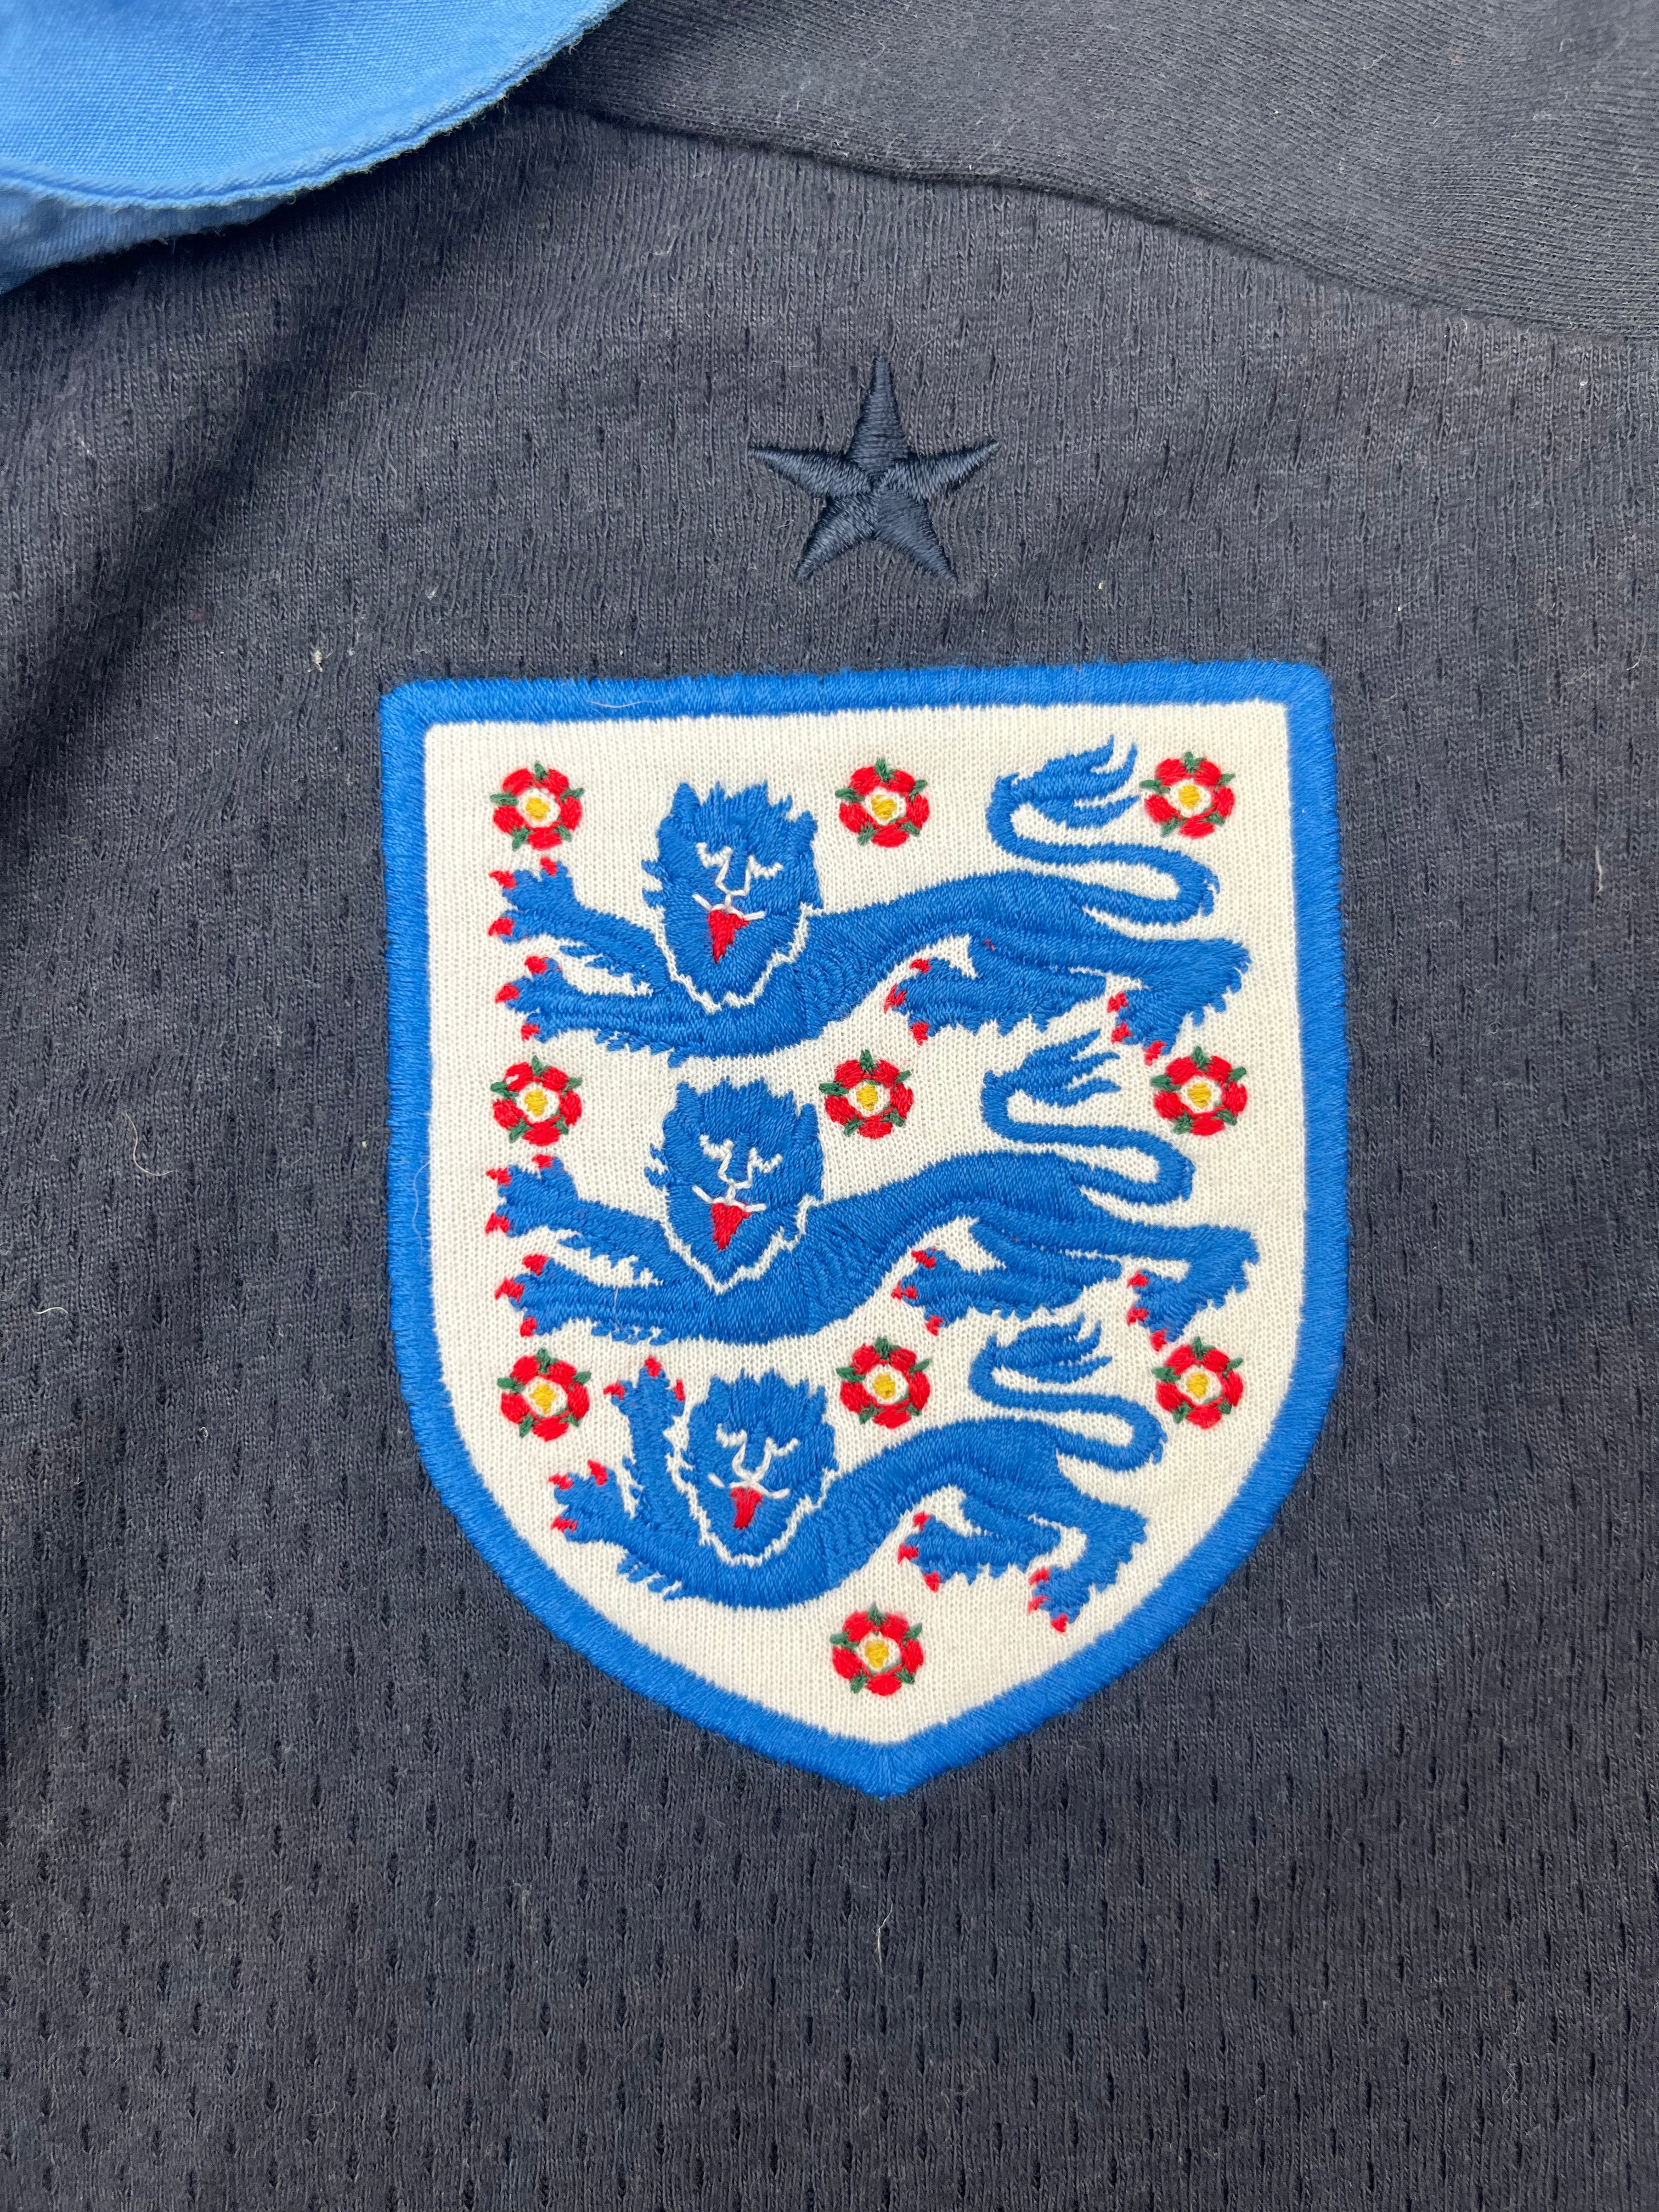 2012/13 England Away Shirt (XL) 8.5/10